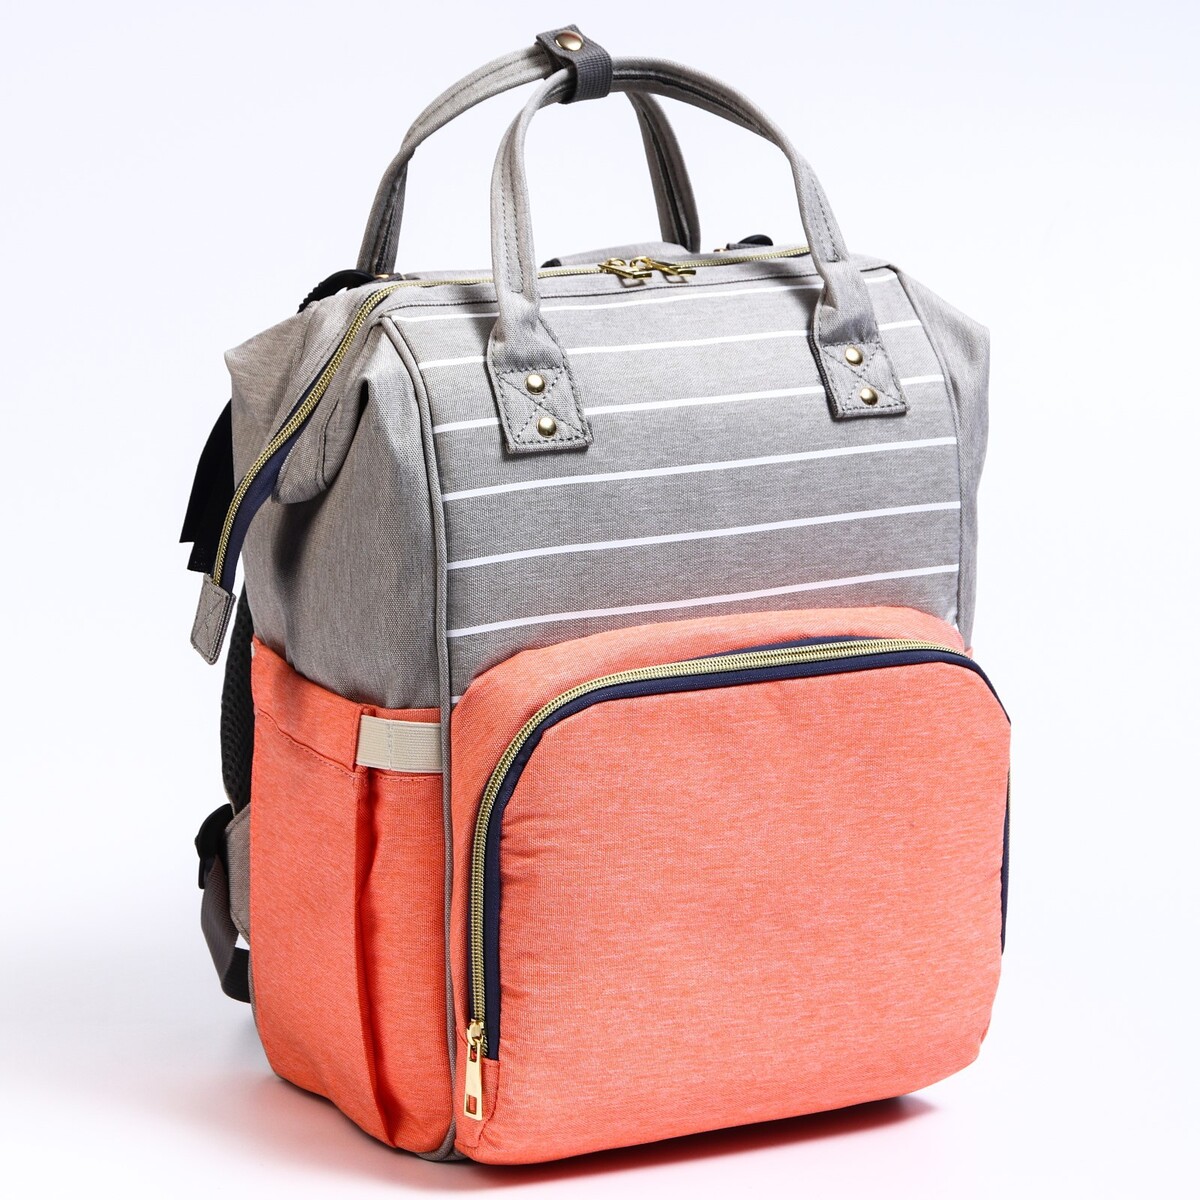 Рюкзак женский с термокарманом, термосумка - портфель, цвет серый/розовый